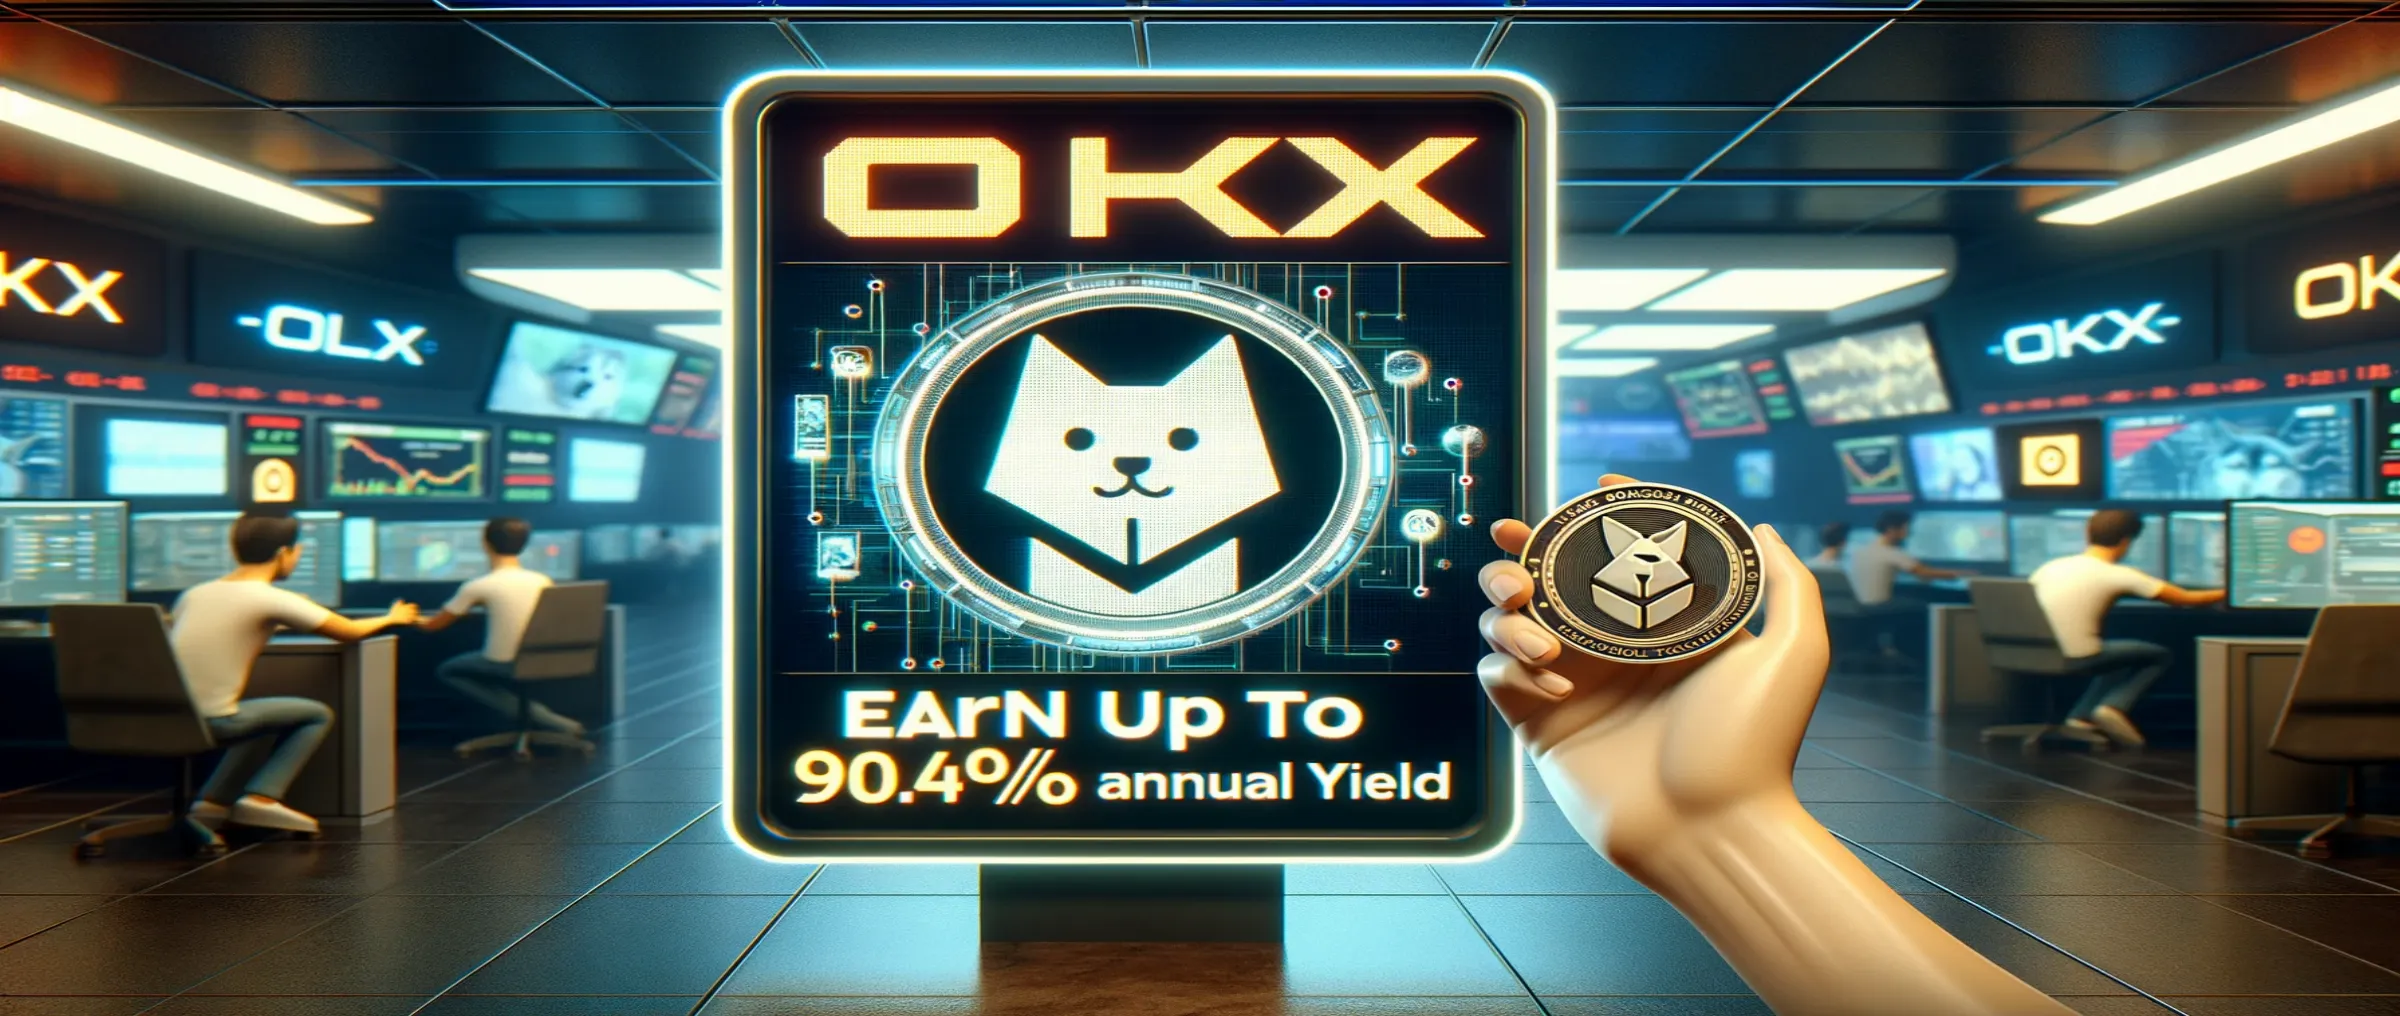 На бирже OKX можно получить до 90,47% годовых за блокировку Floki